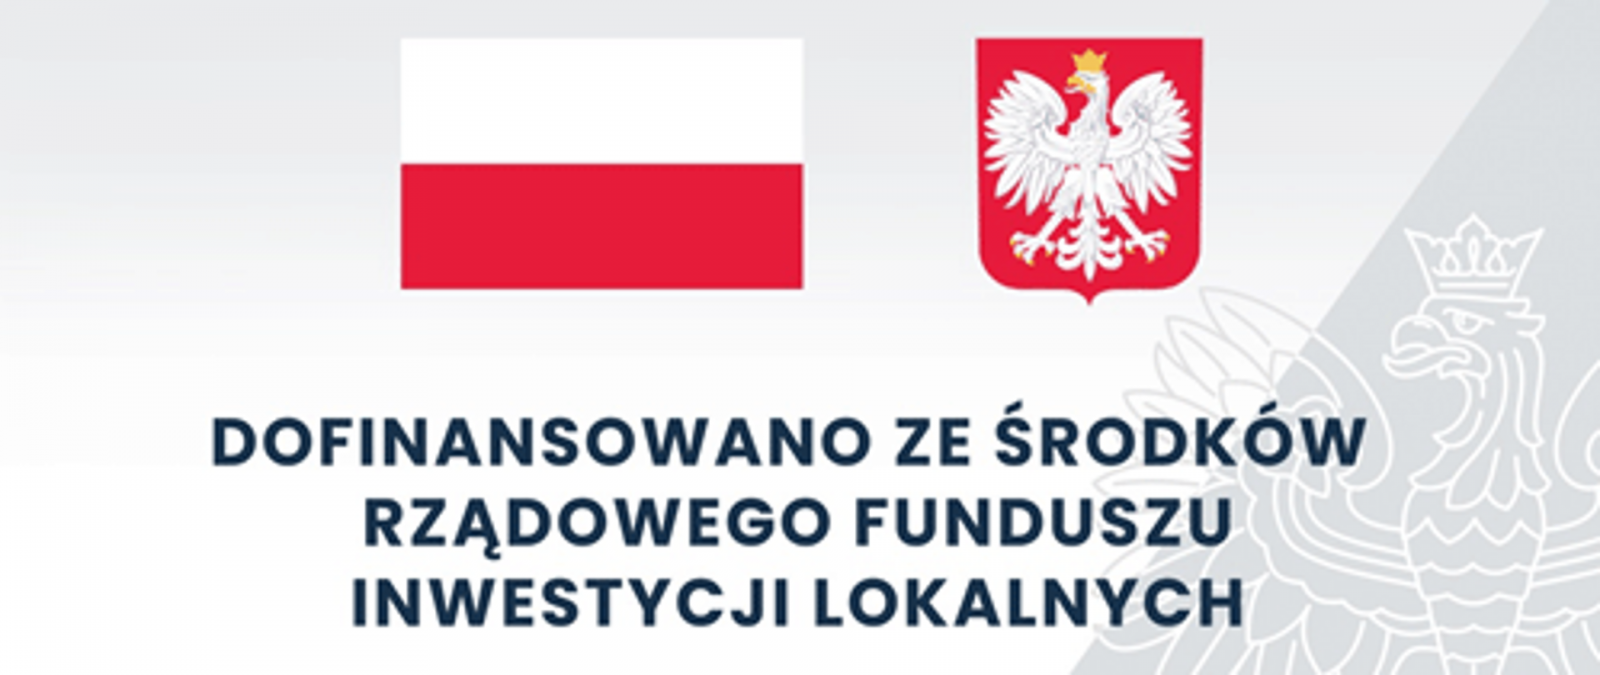 flaga Polski i godło oraz napis: dofinansowano ze środków Rządowego Funduszu Inwestycji Lokalnych